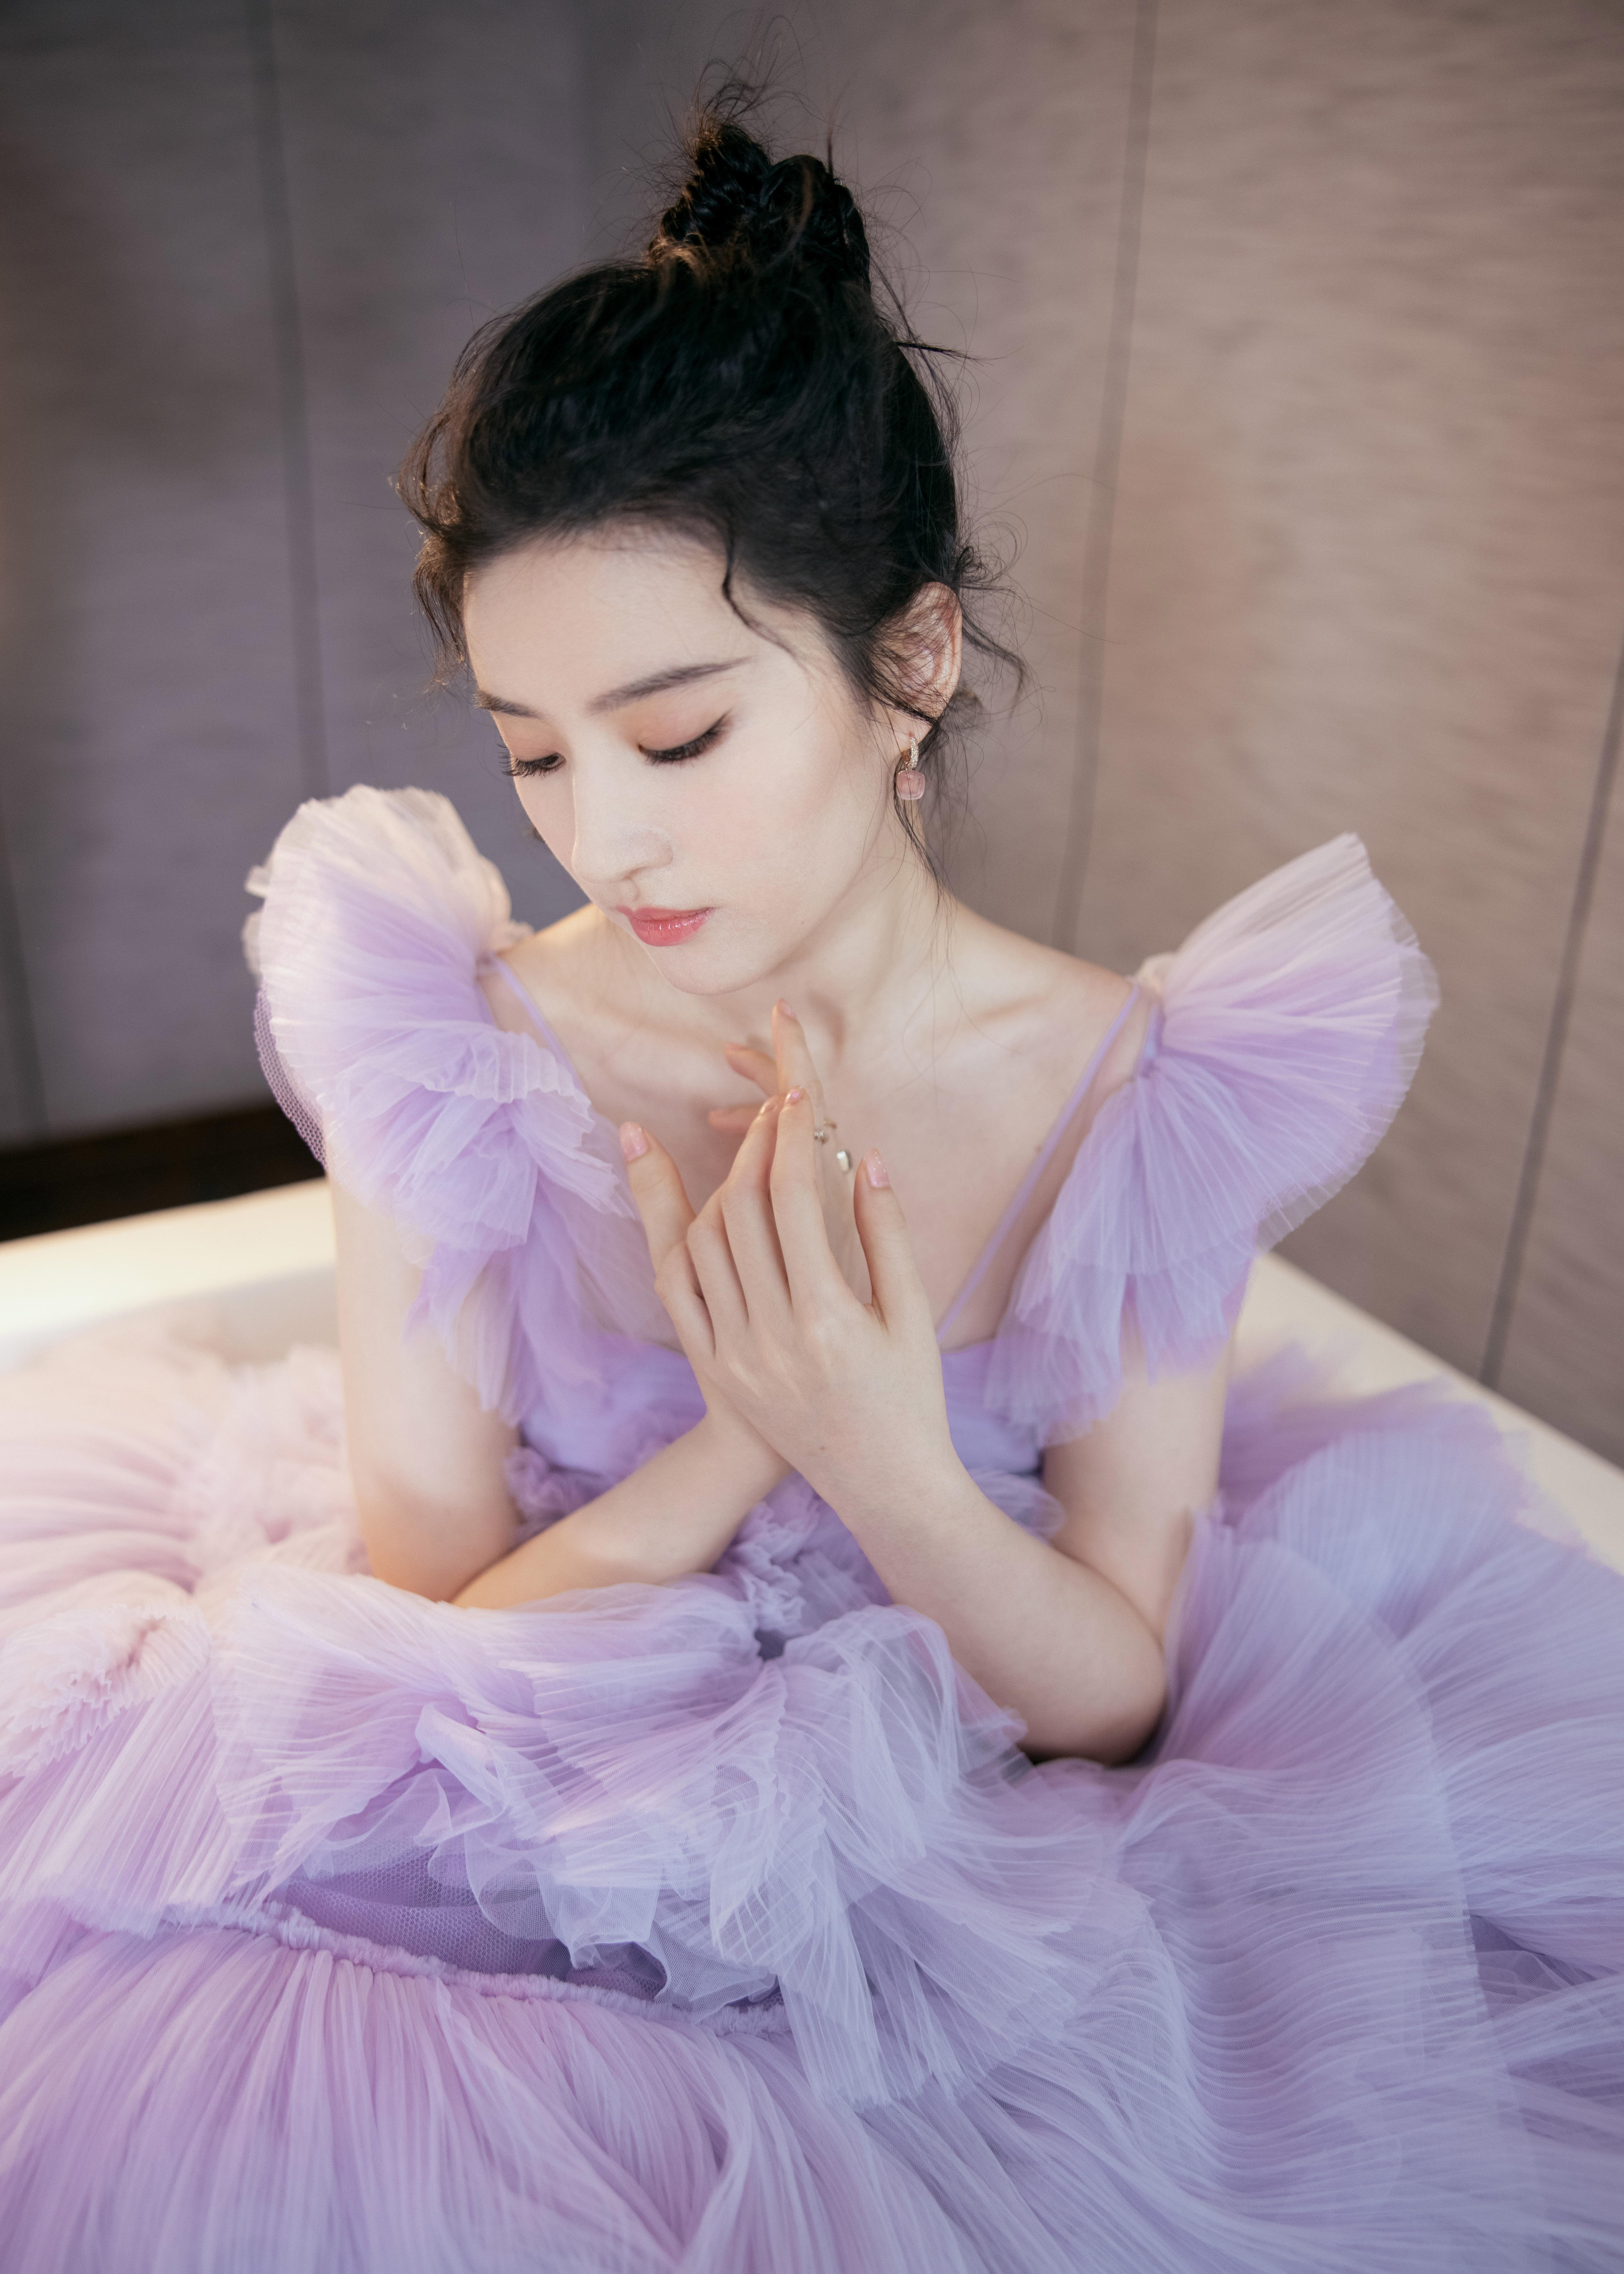 刘亦菲春日紫樱蛋糕裙浪漫文艺 直播镜头下甜美十足状态佳,